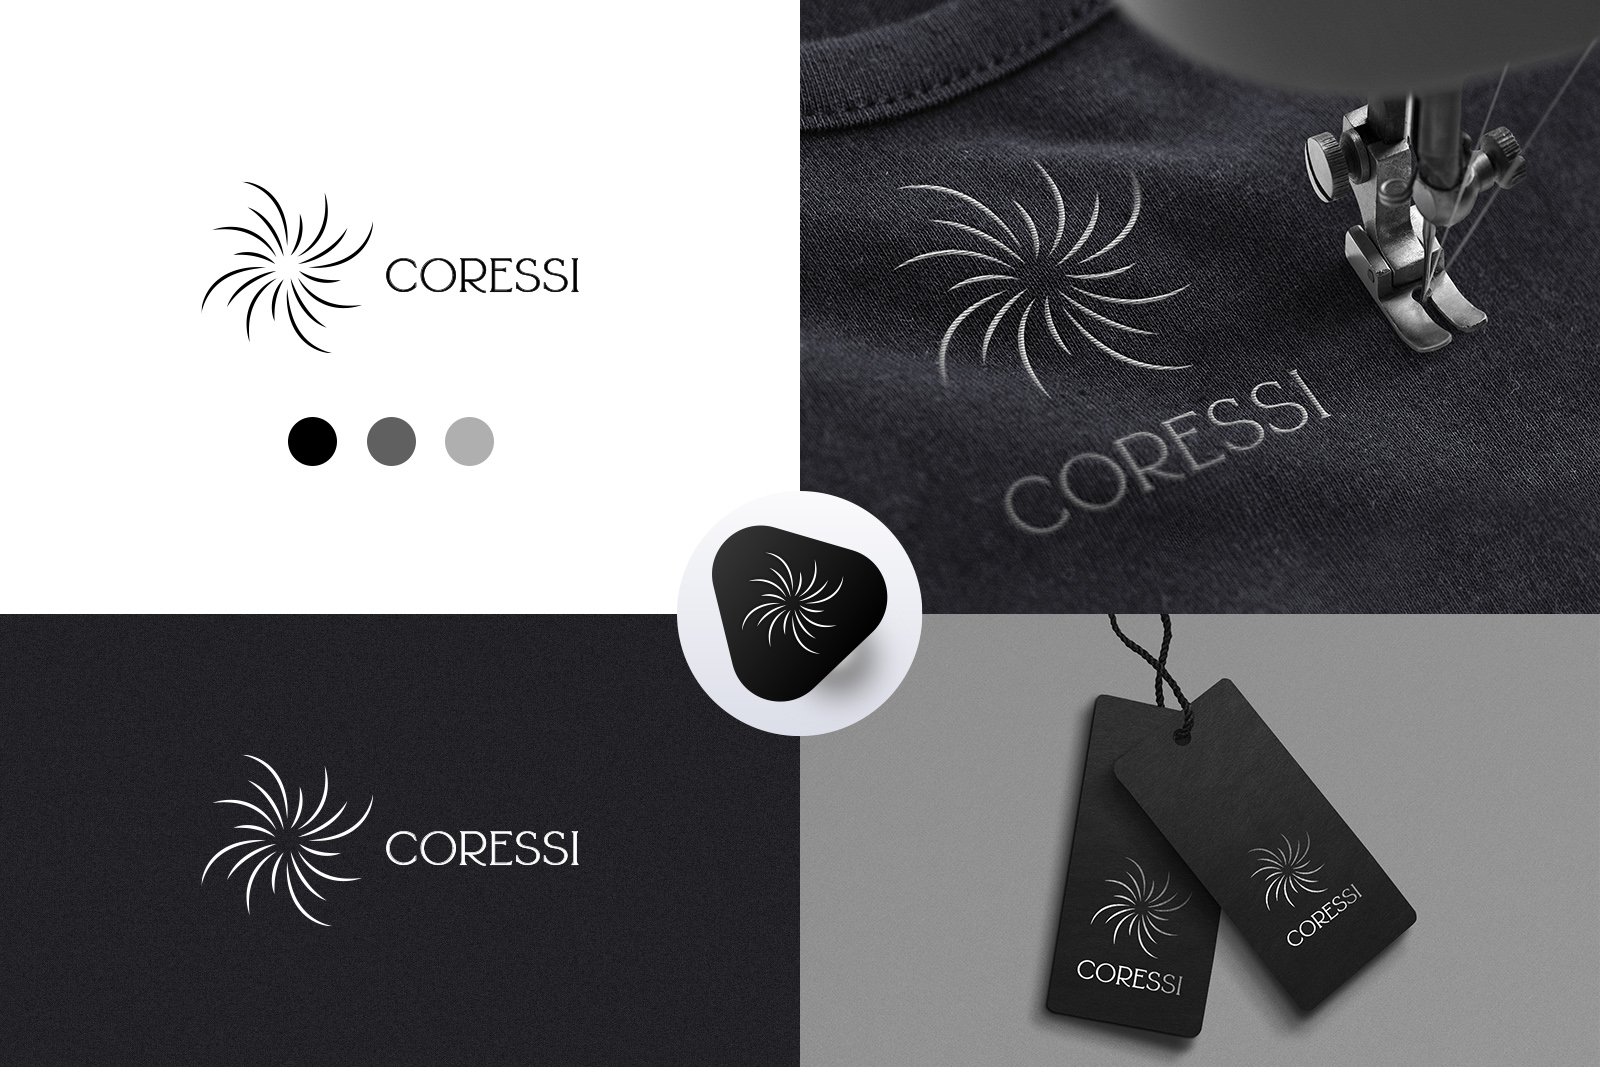 Coressi - производство женской одежды (логотип)